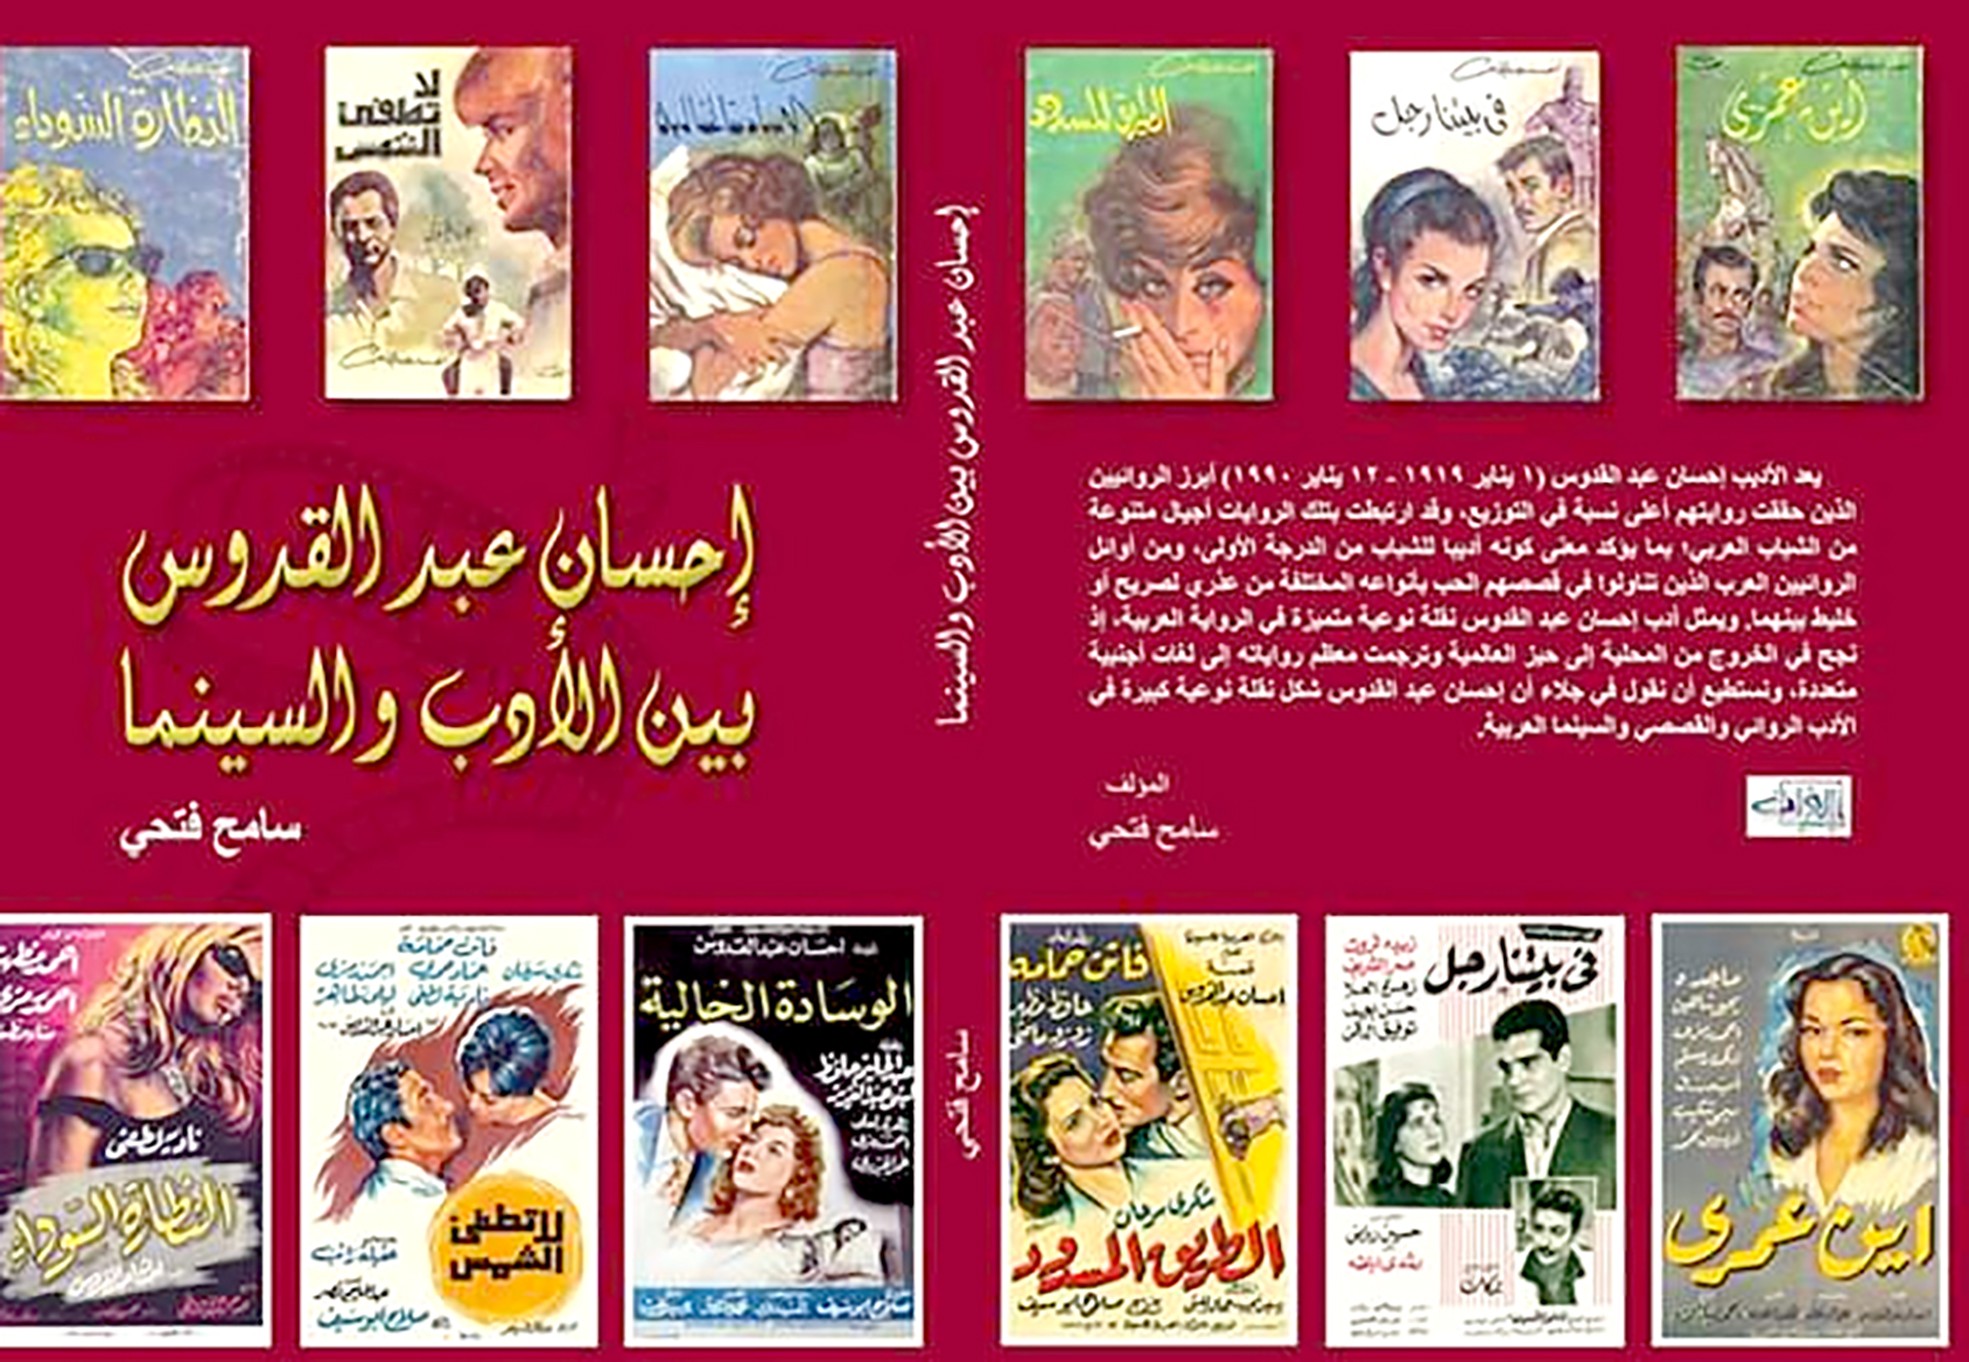 يشير فتحي في كتابه "إحسان عبد القدوس بين الأدب والسينما" أن عبد القدوس شكّل نقلة نوعية في الأدب الروائي والقصصي والسينما العربية